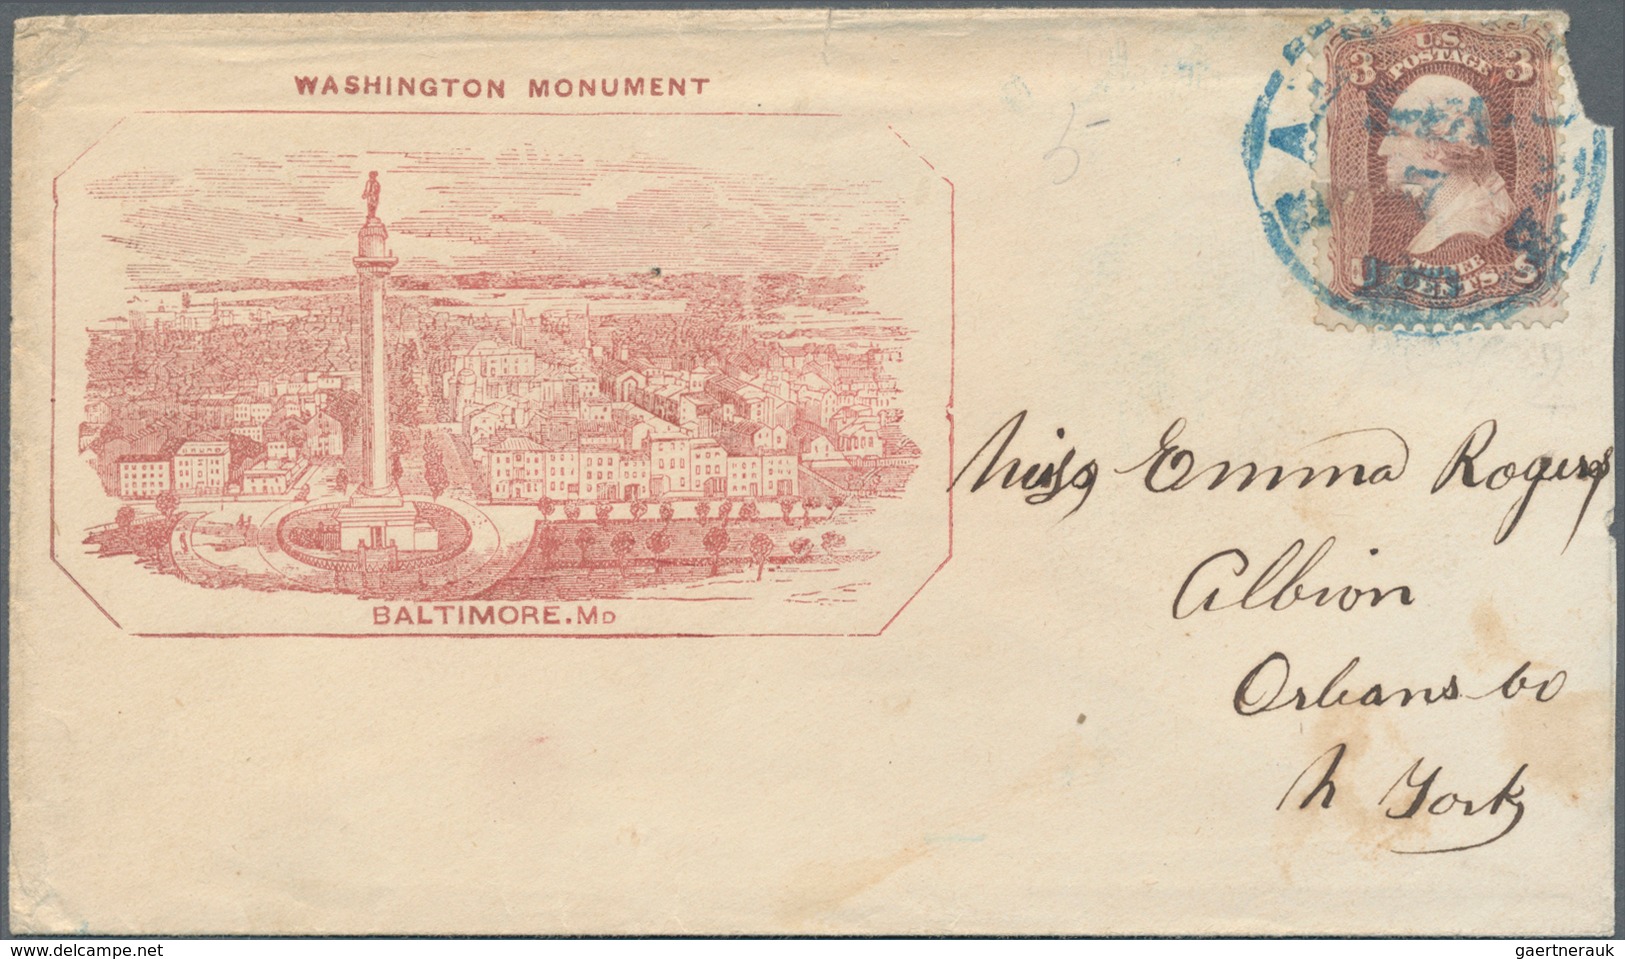 24365 Vereinigte Staaten von Amerika: 1860/1950, interesting lot of ca. 250 letters, postcards, postal sta